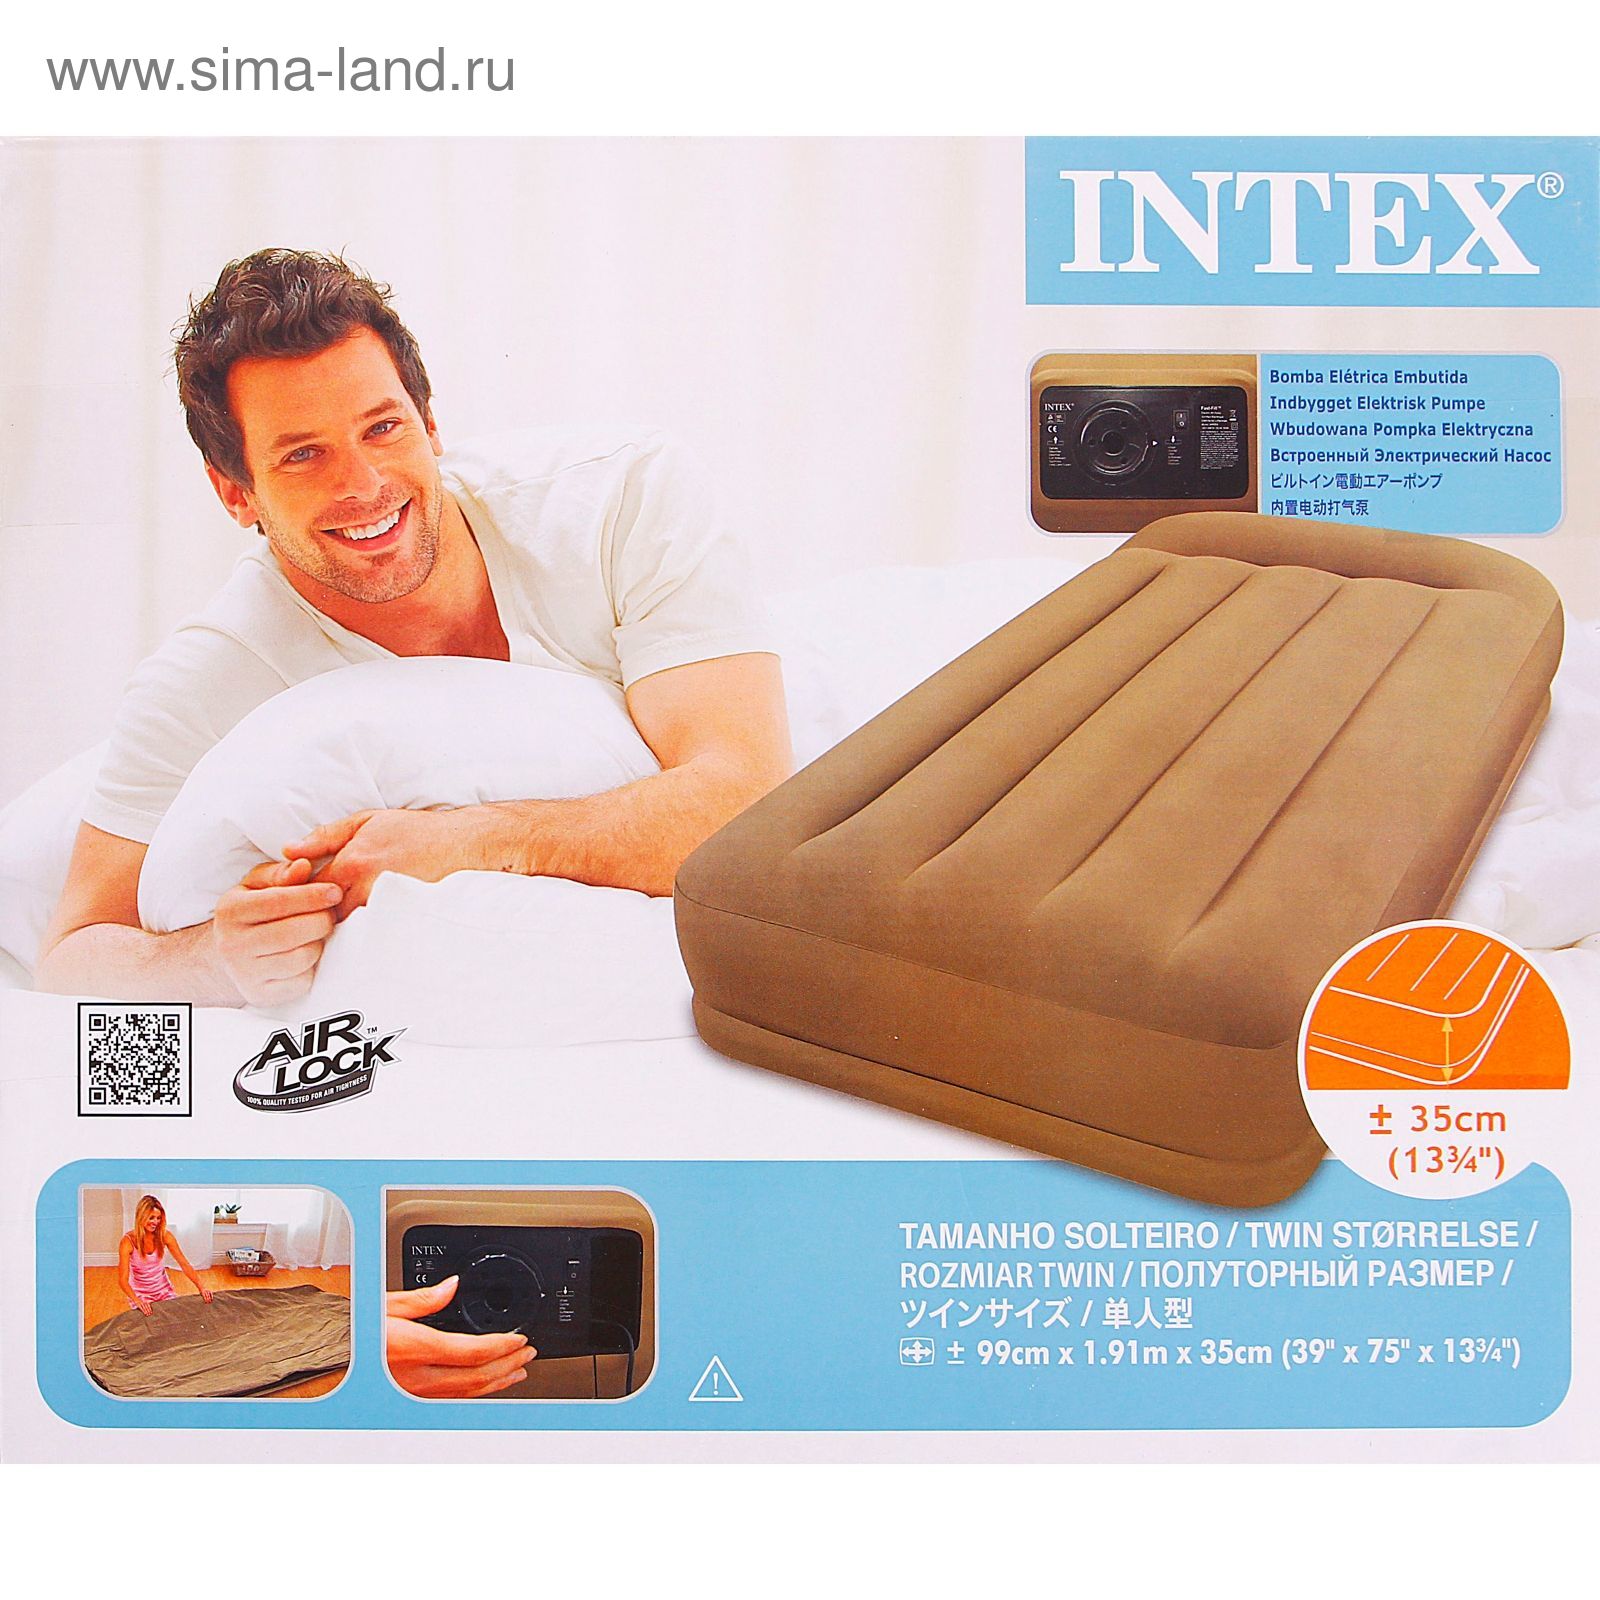 Кровать надувная "Pillow resе mid Twin" с подголовником, насос 220V в комплекте INTEX